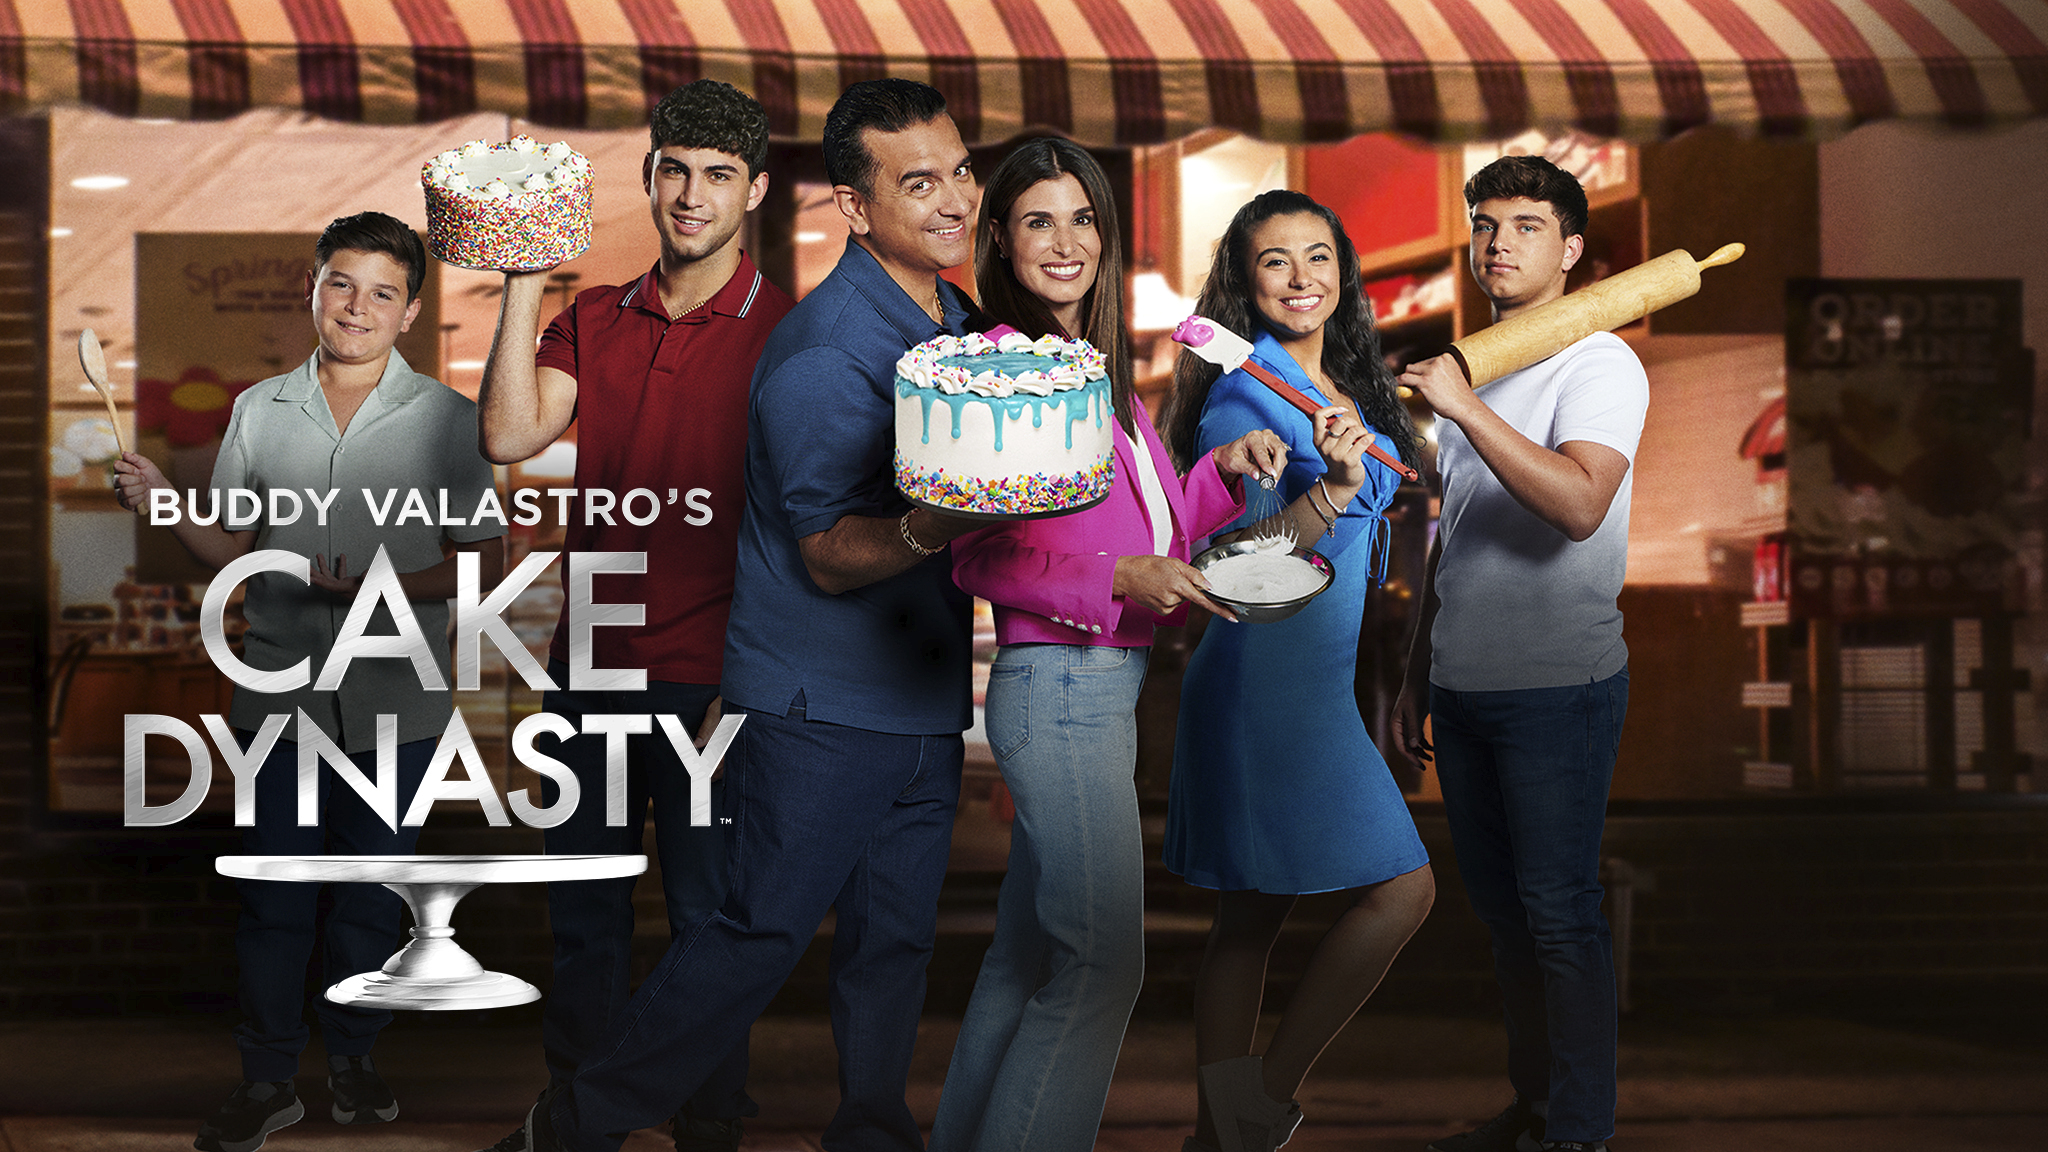 Buddy Valastro's Cake Dynasty